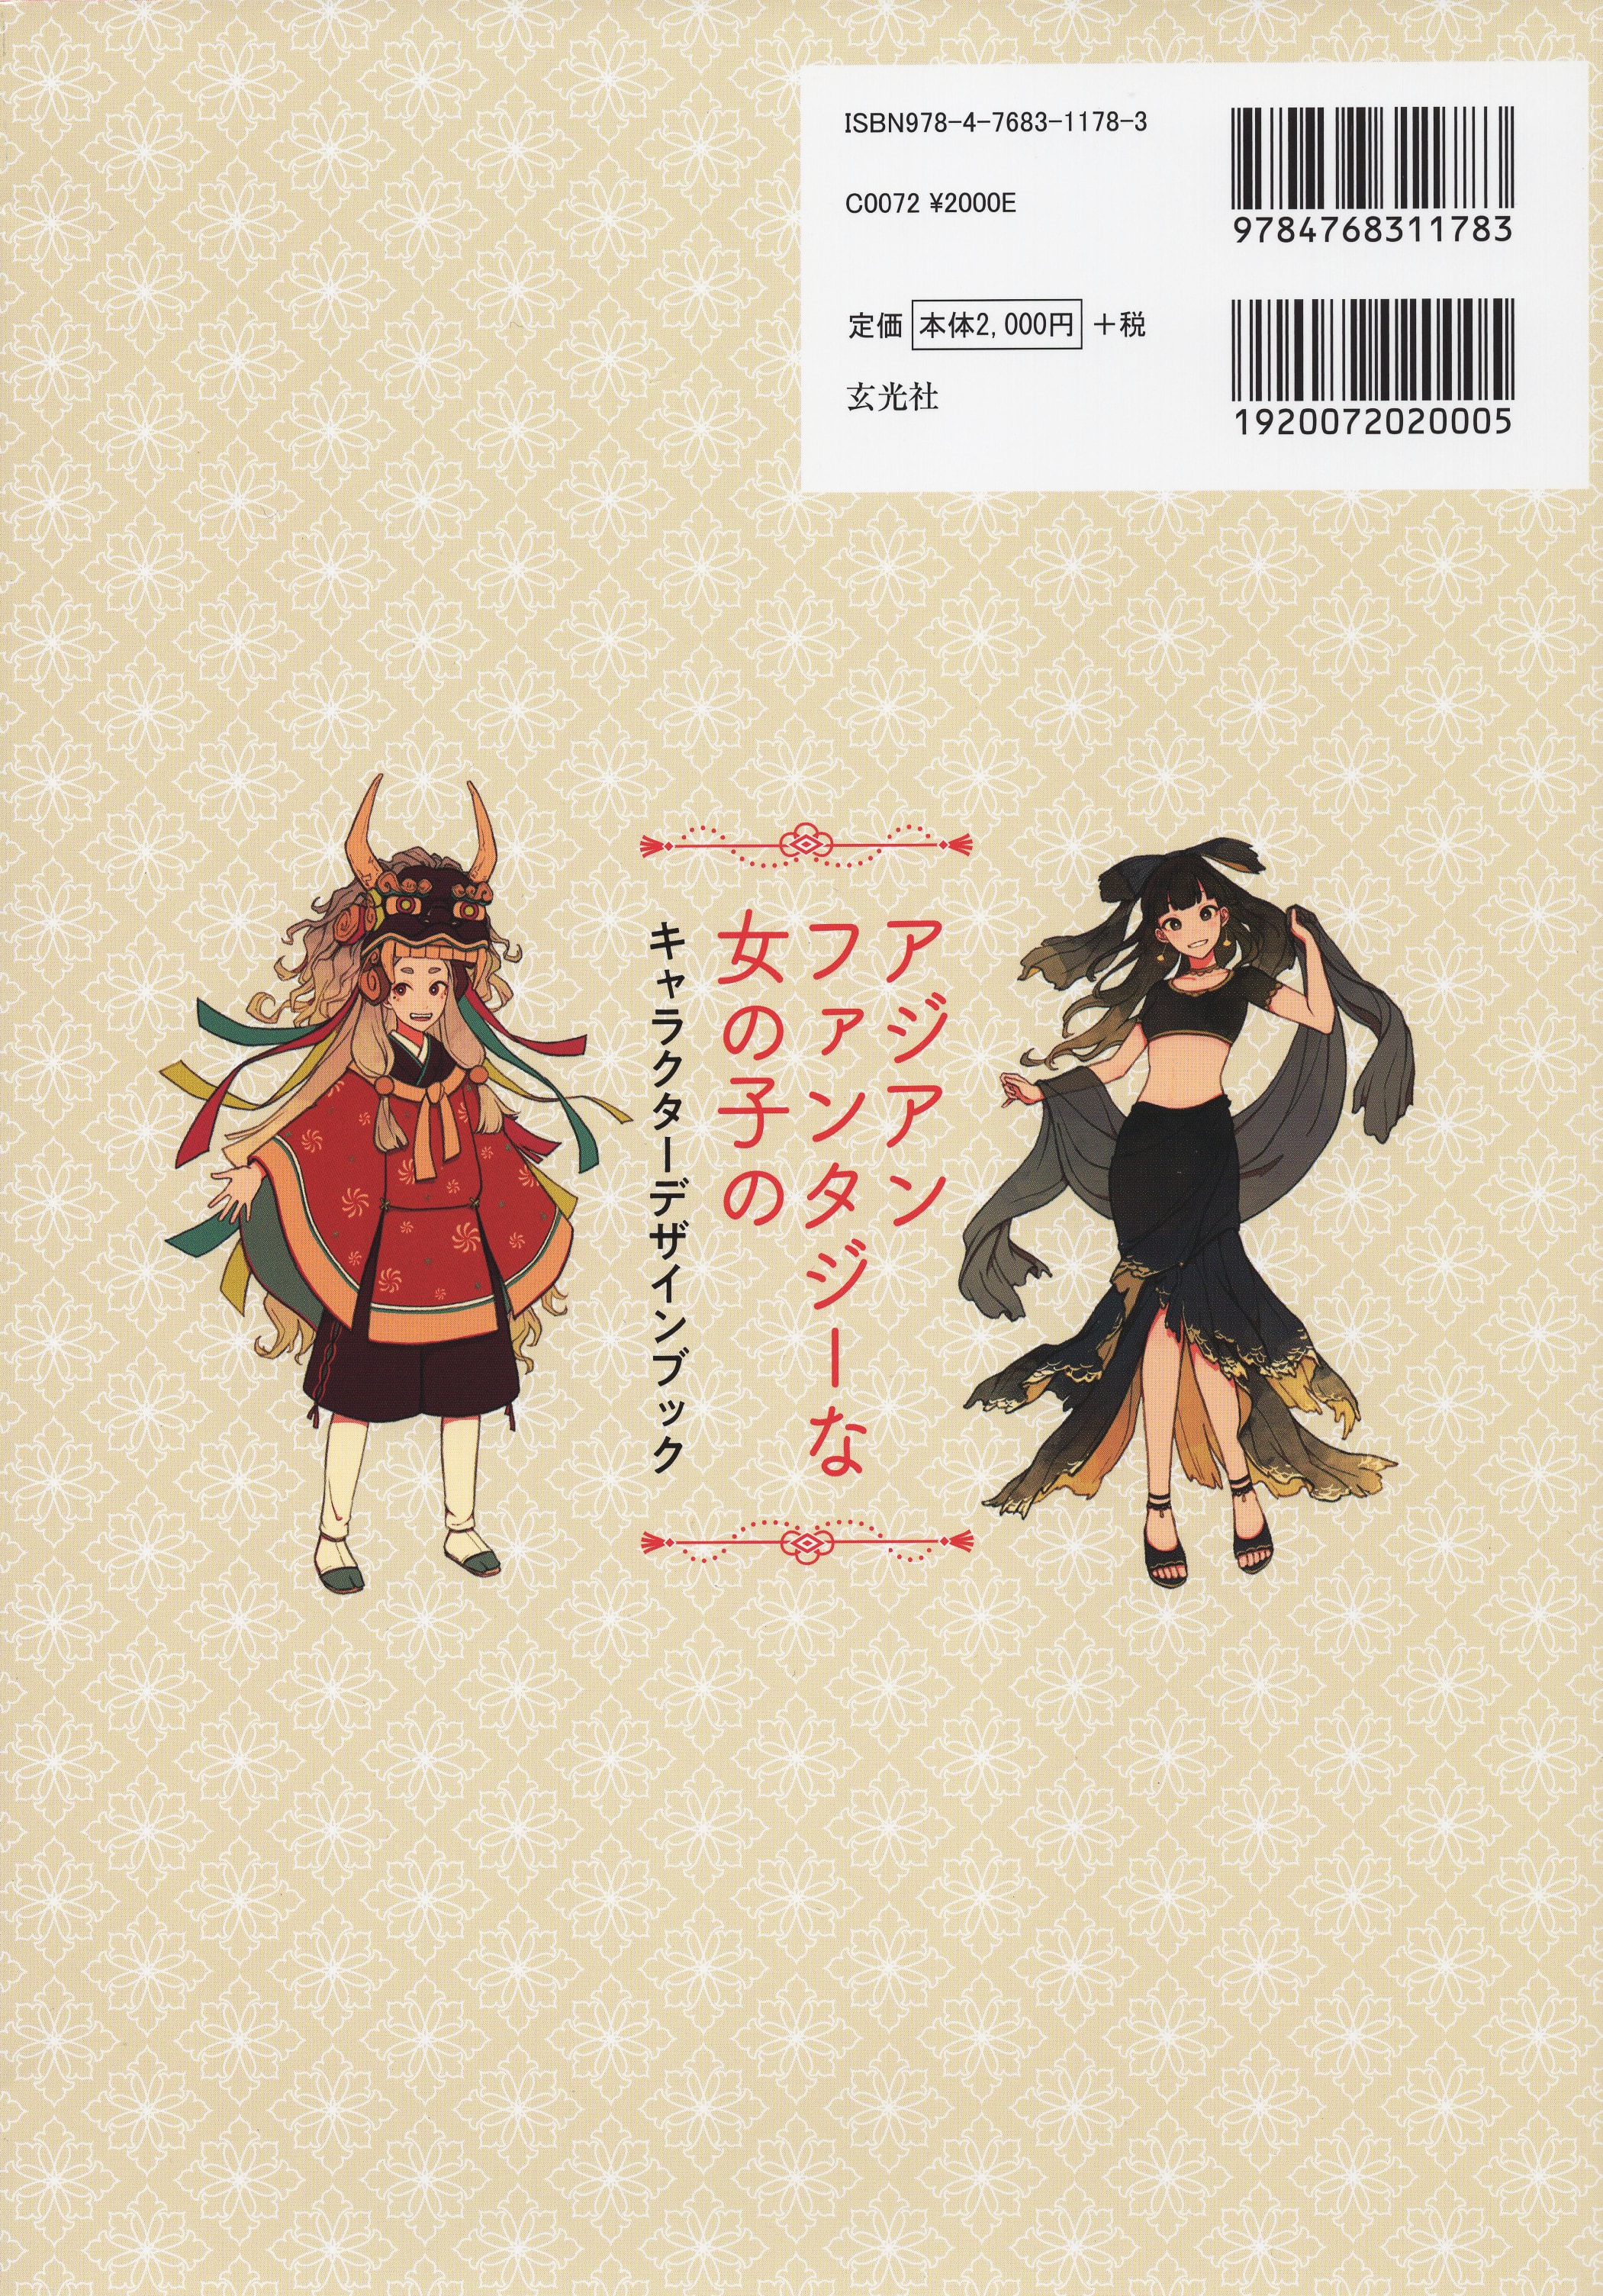 玄光社 超描けるシリーズ アジアンファンタジーな女の子のキャラクターデザインブック | まんだらけ Mandarake